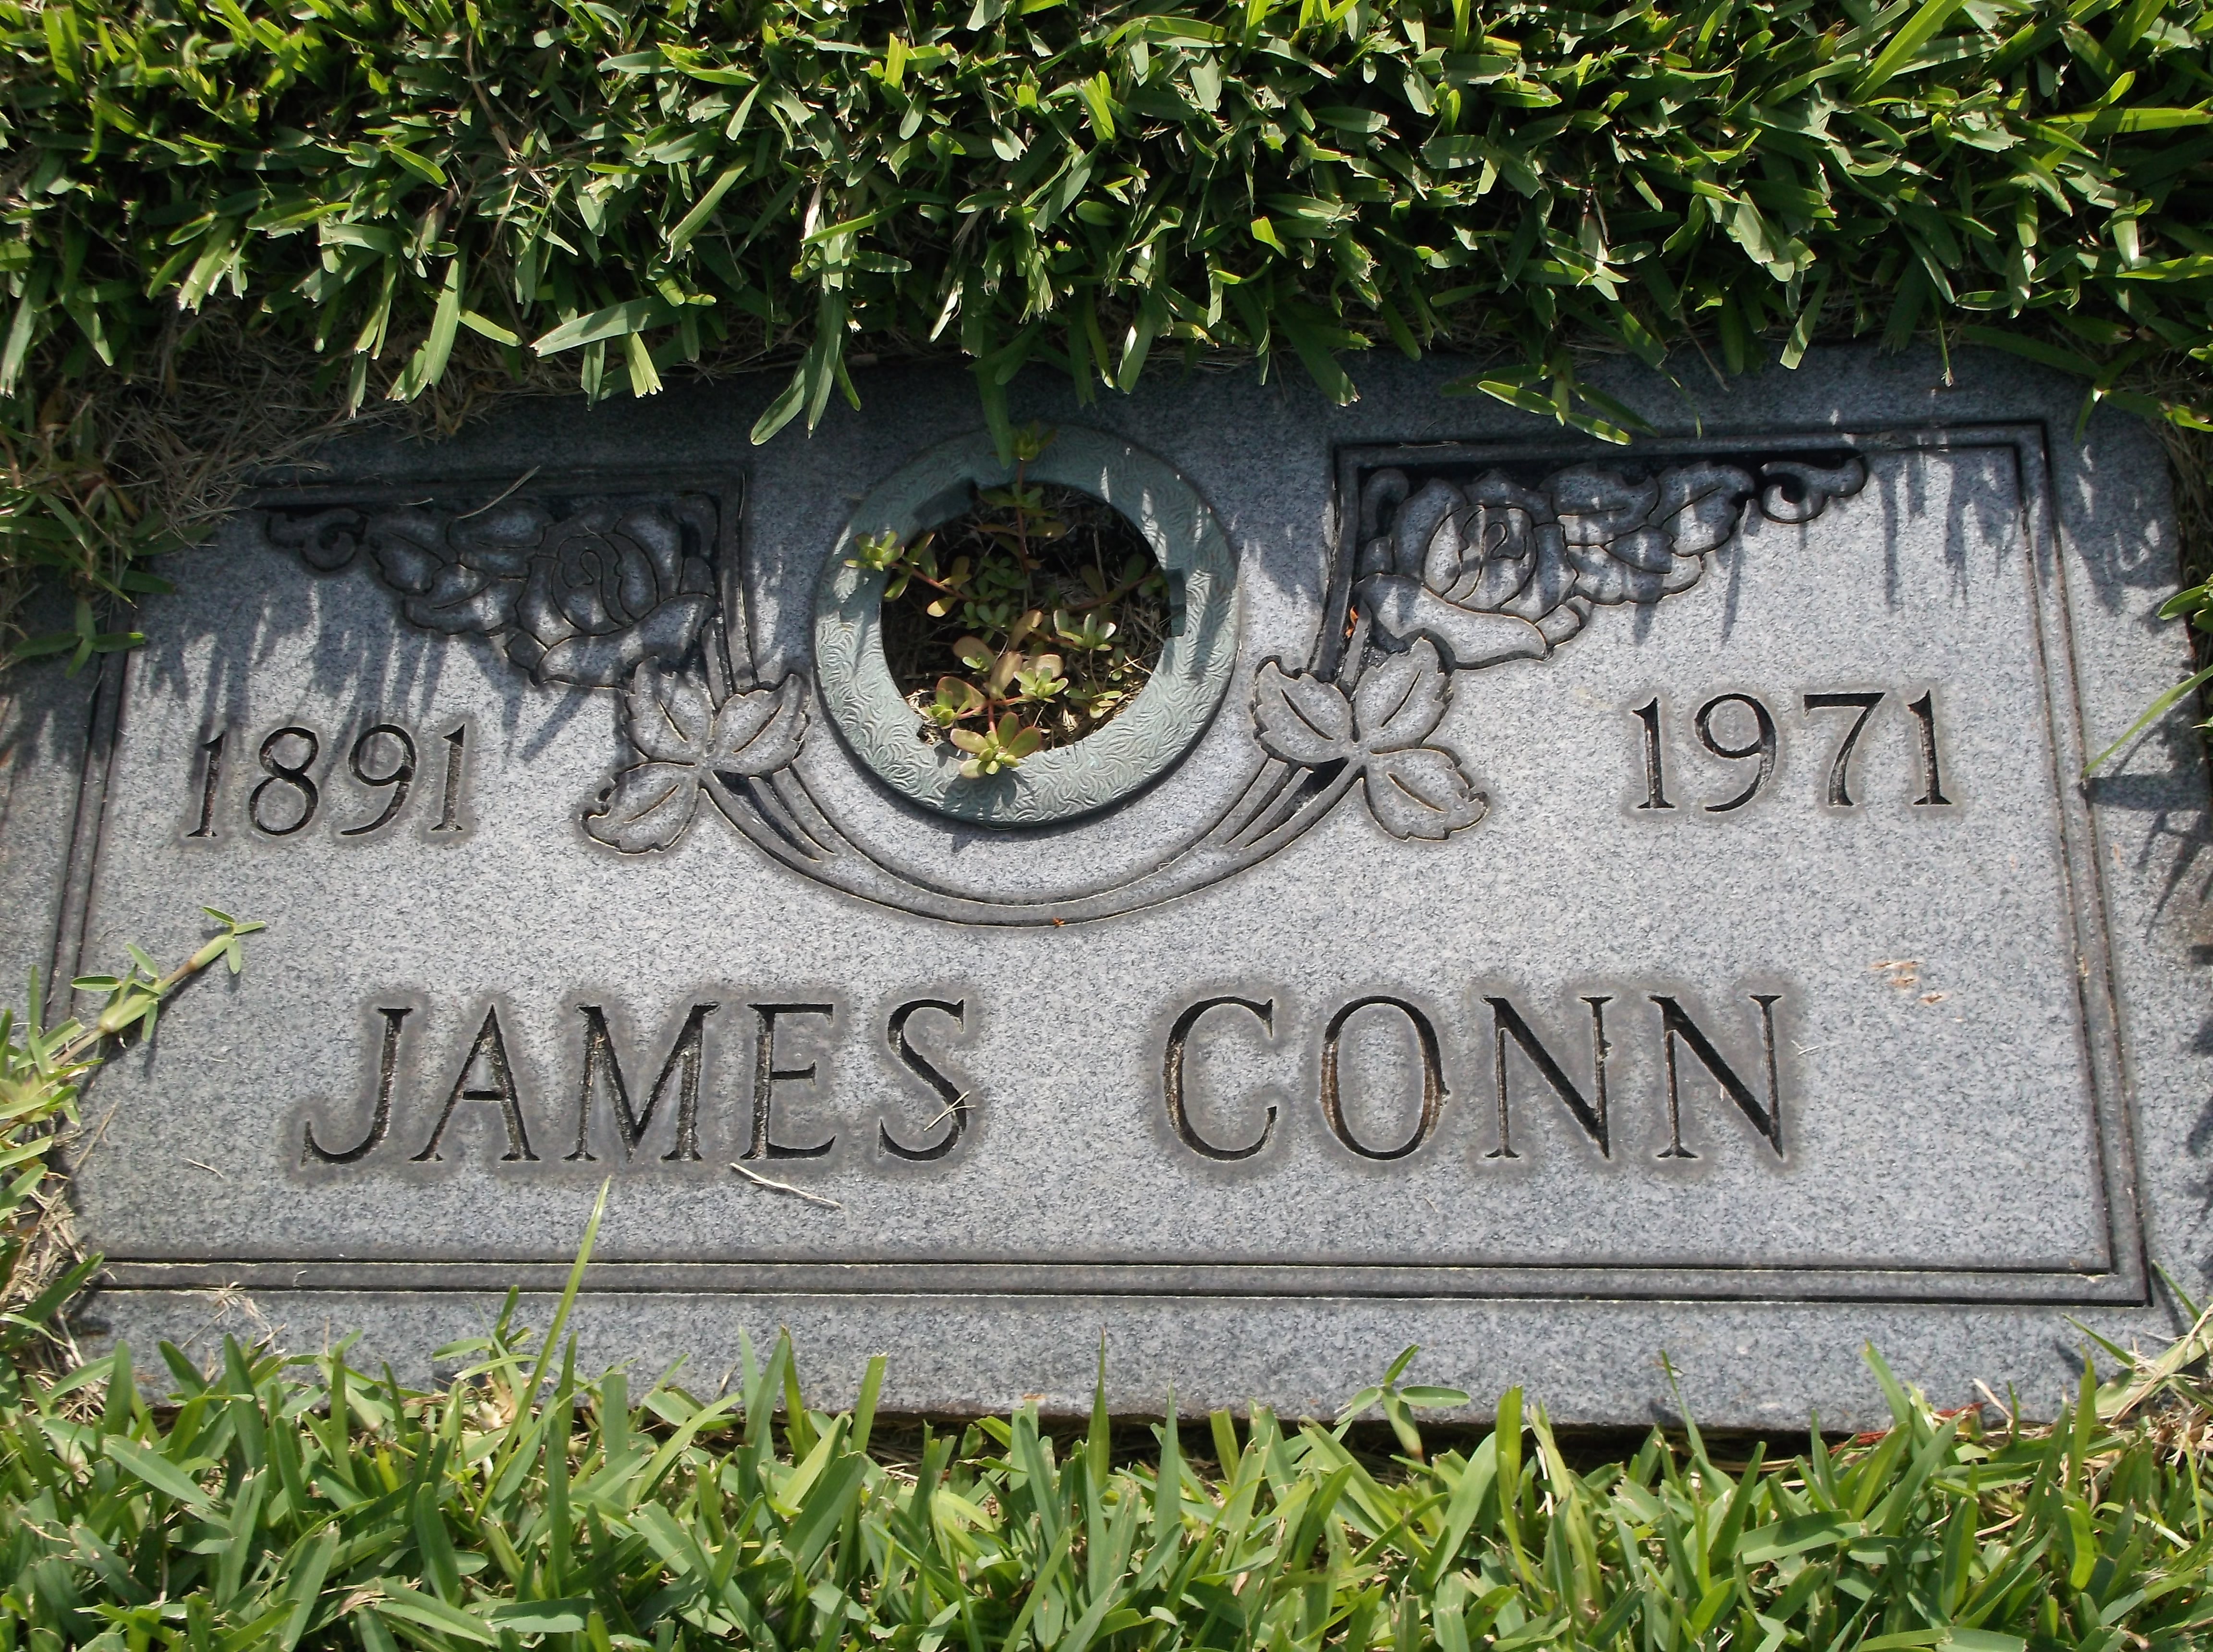 James Conn